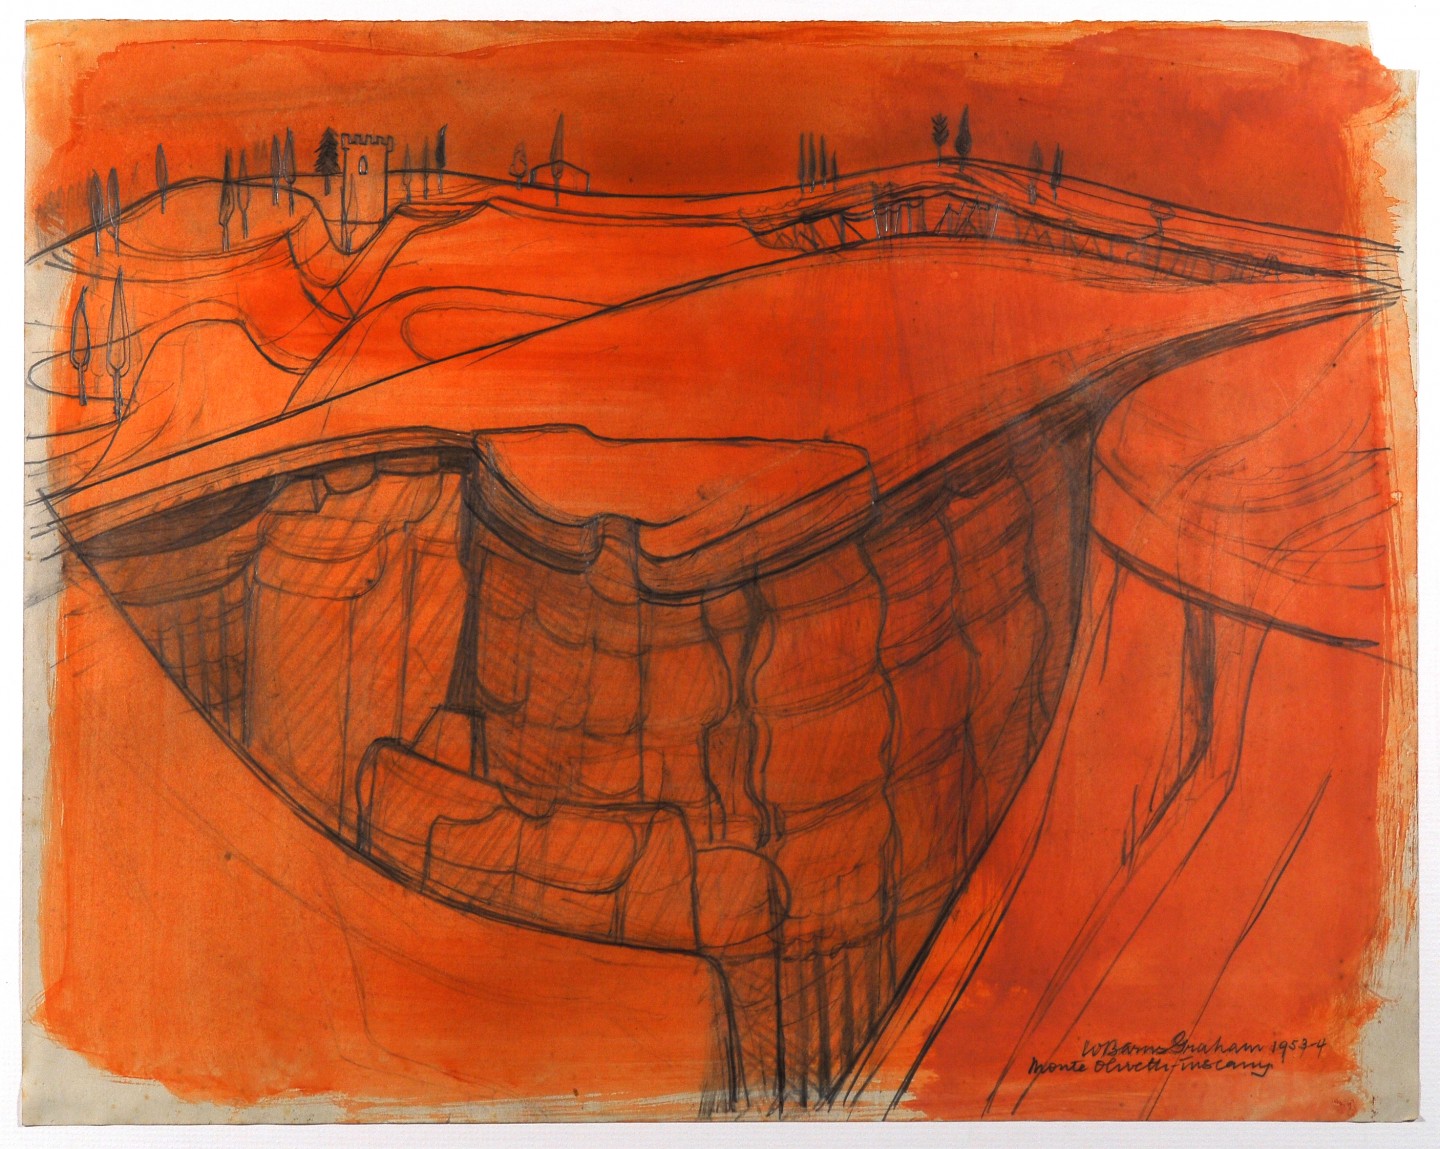 Monte Olivetti, 1954, pencil and tempera on paper